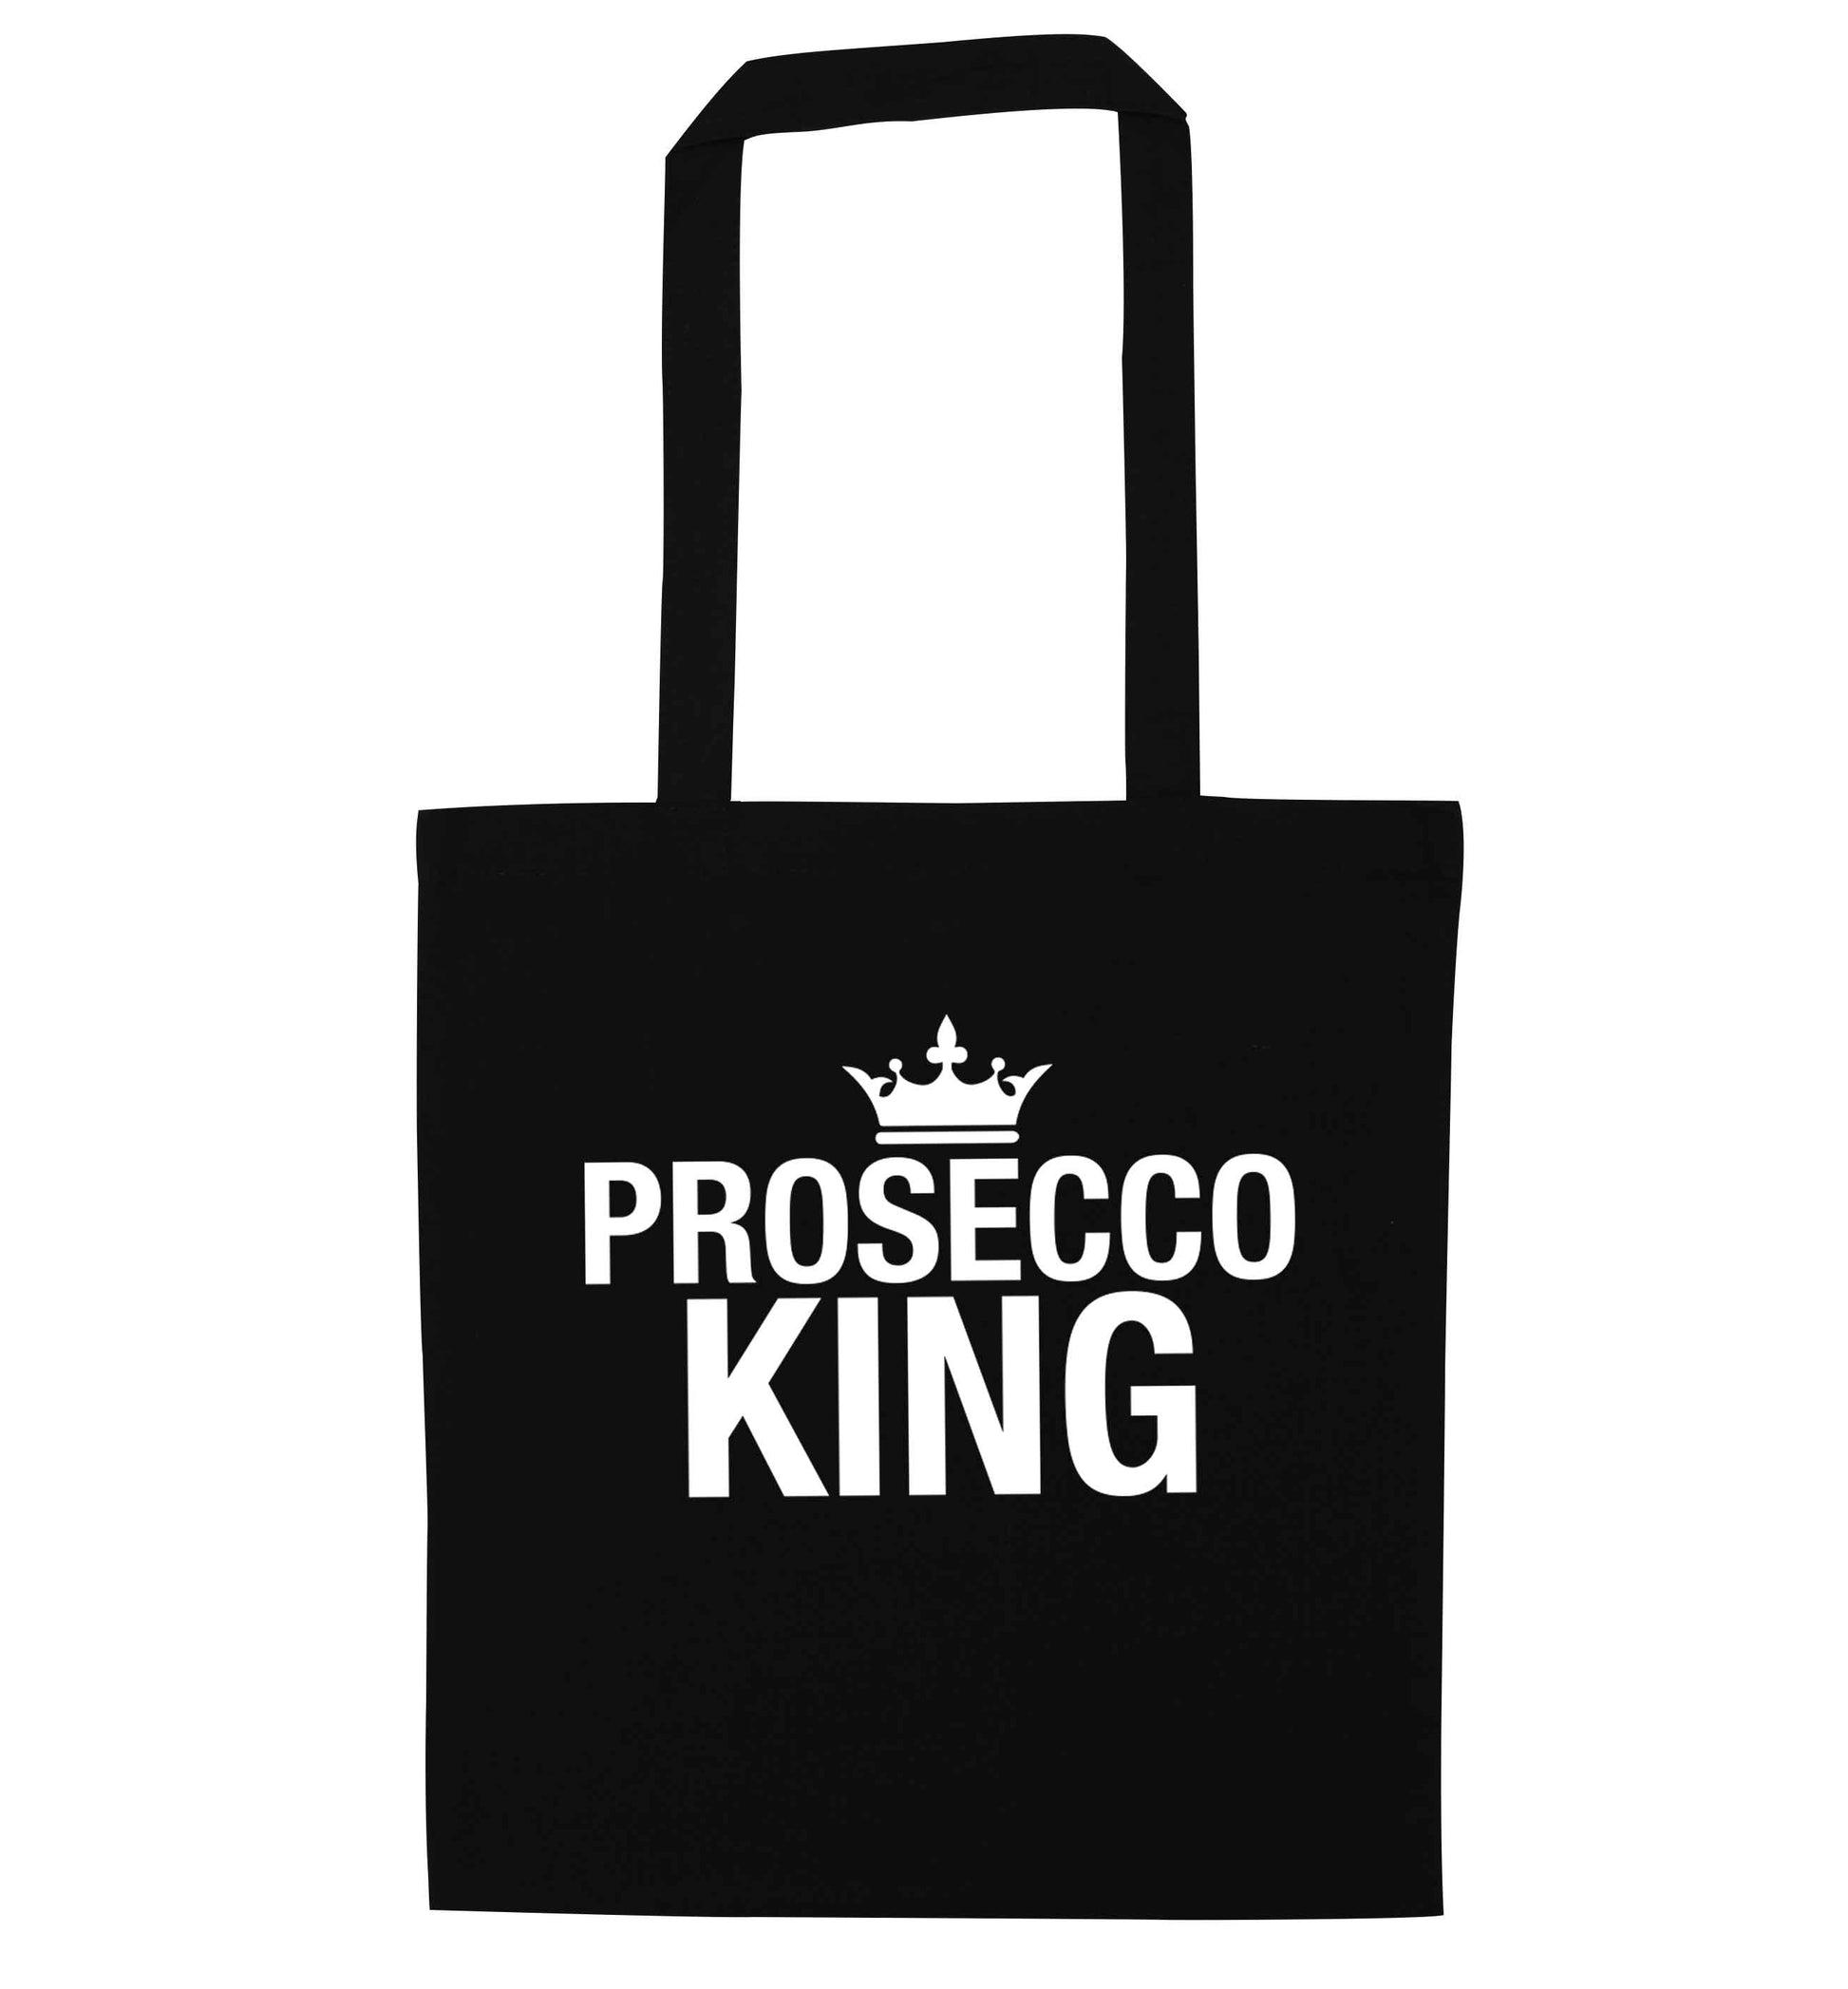 Prosecco king black tote bag